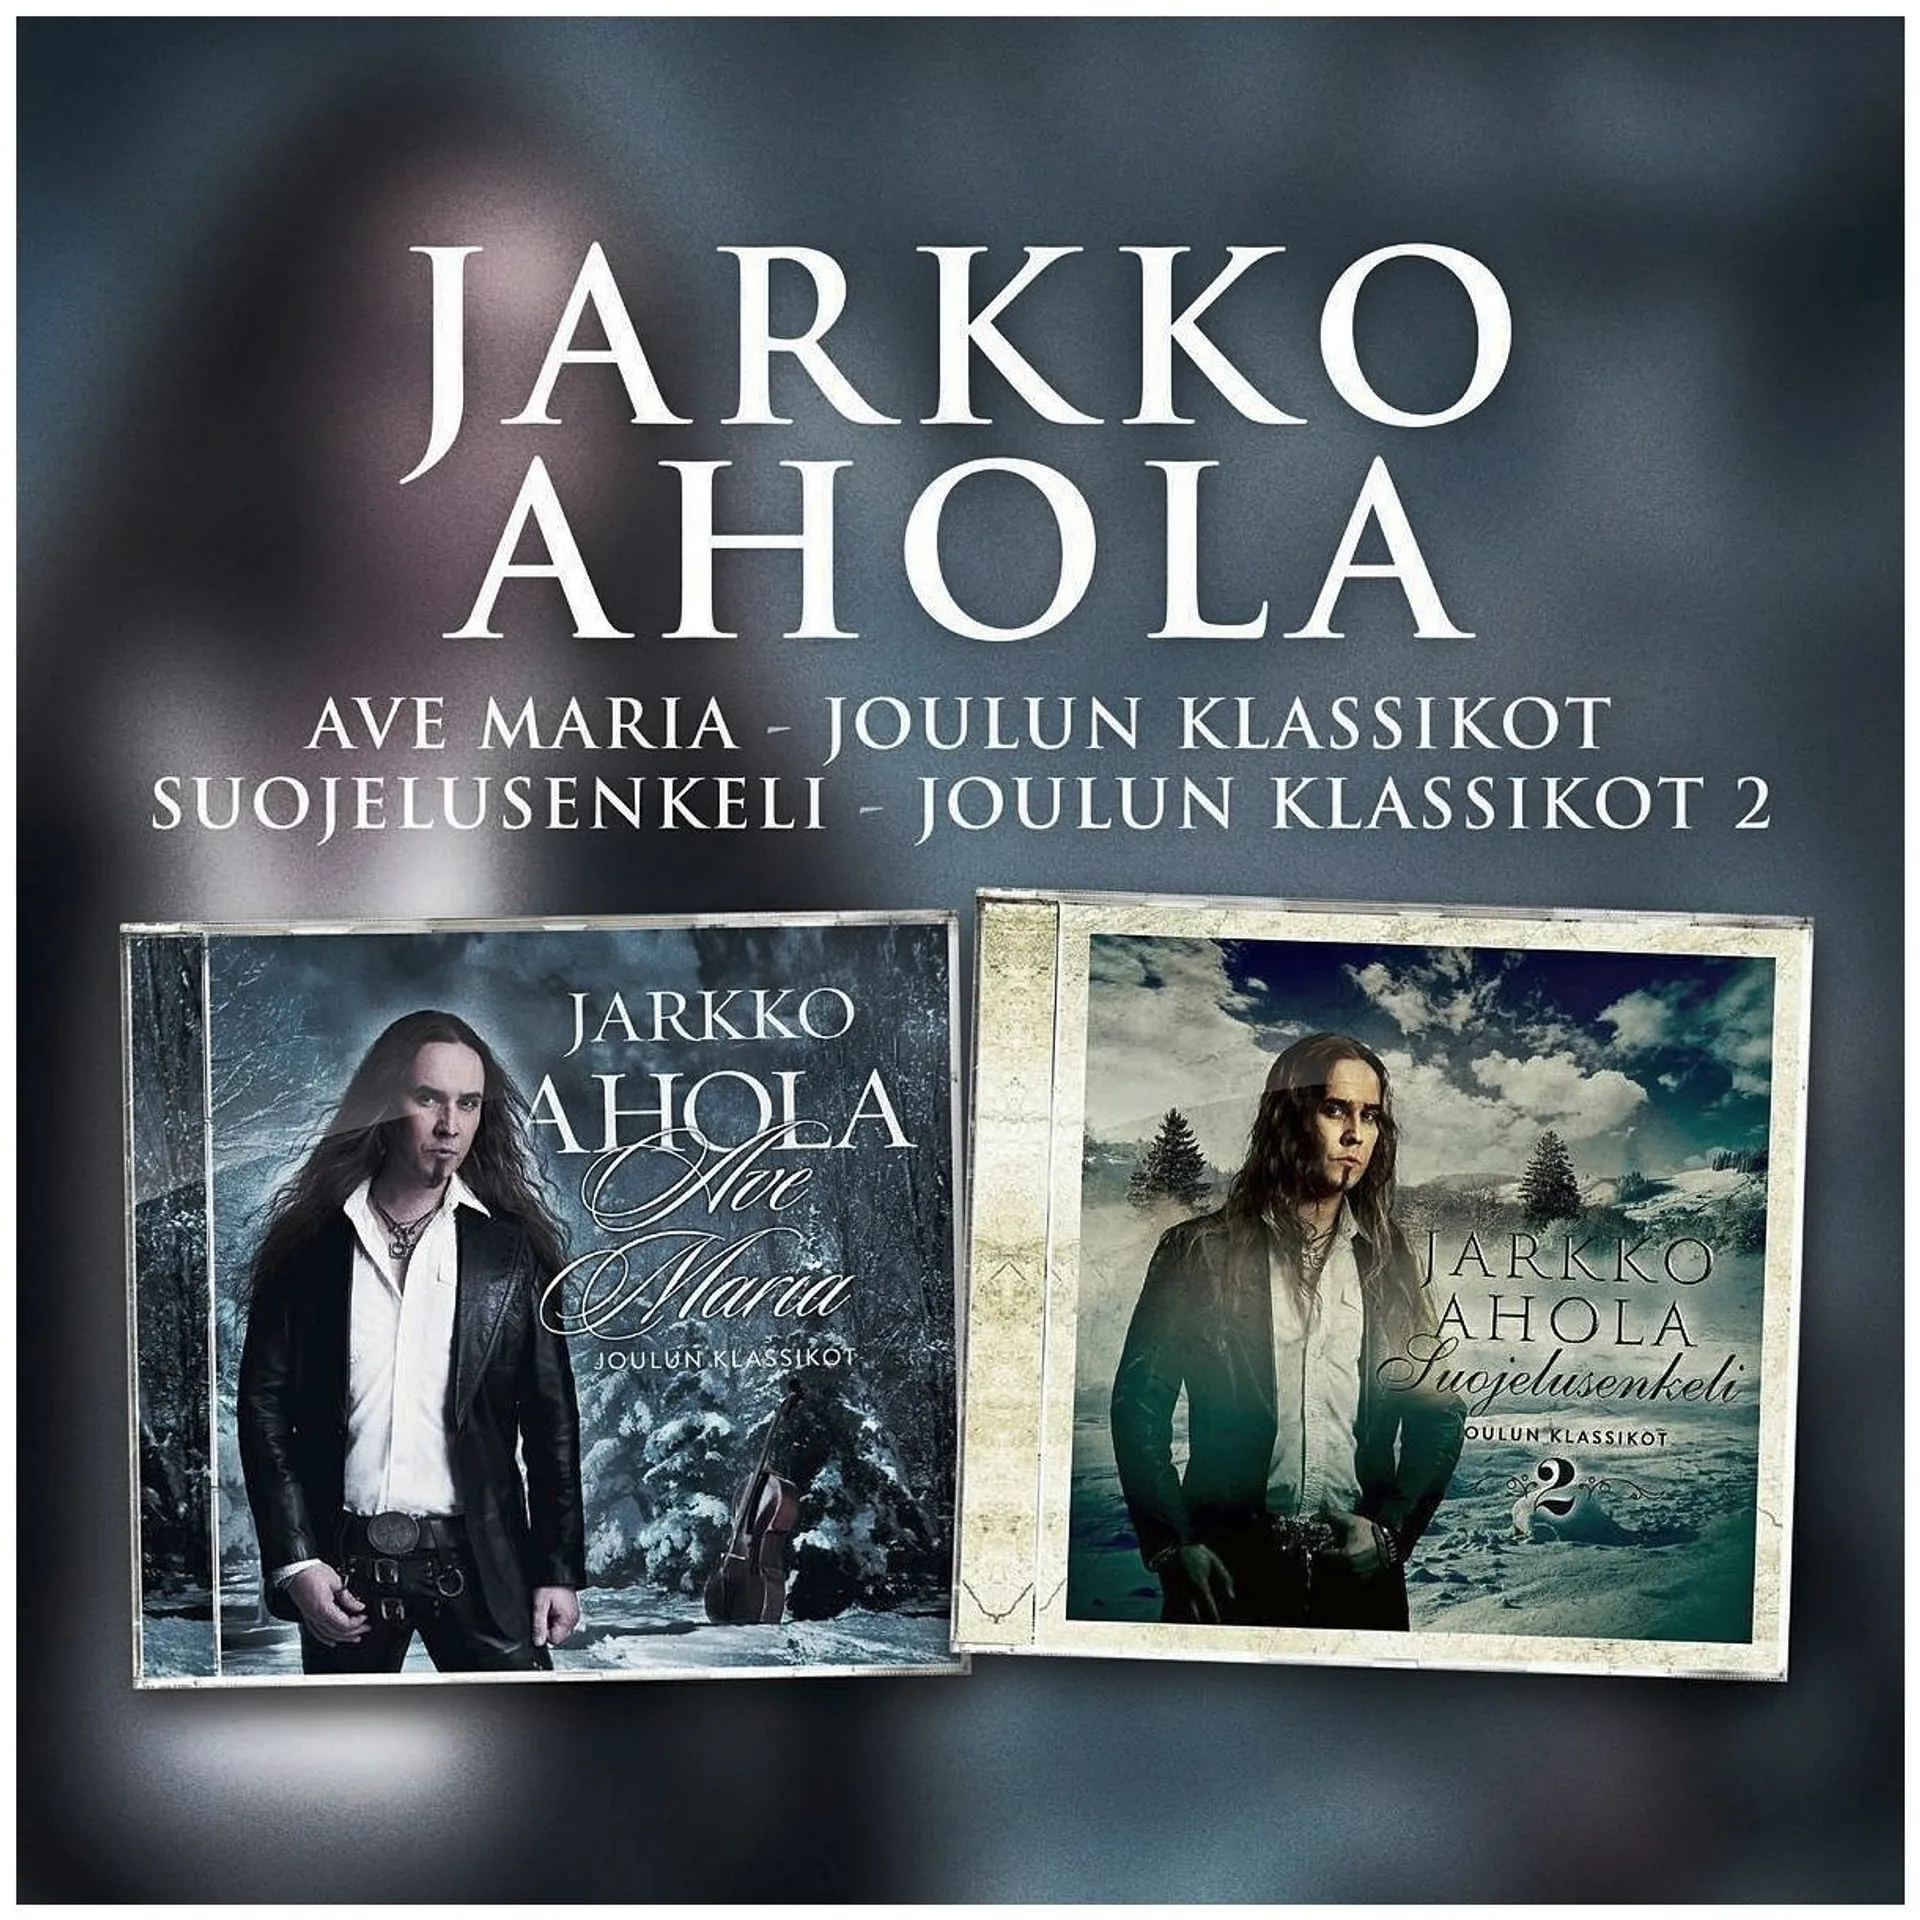 Ahola Jarkko - Ave Maria / Suojelusenkeli 2CD